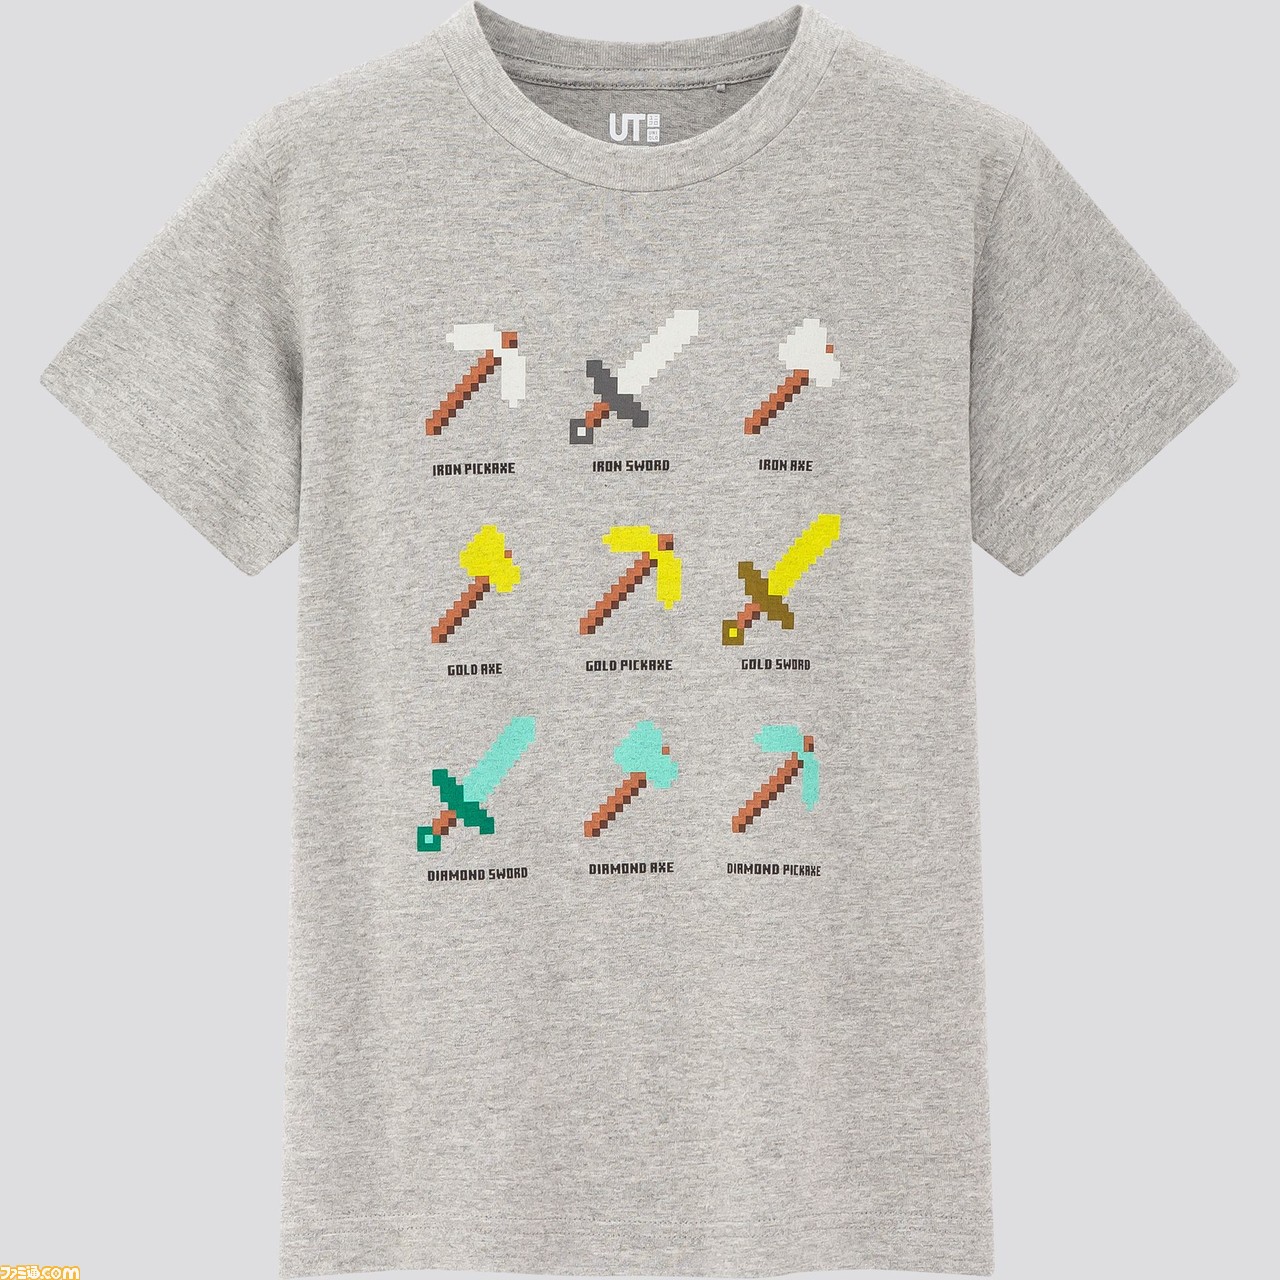 マイクラ ユニクロのコラボtシャツが3 発売 Tシャツを着たキャラクタースキンパックも無料配布 ゲーム エンタメ最新情報のファミ通 Com